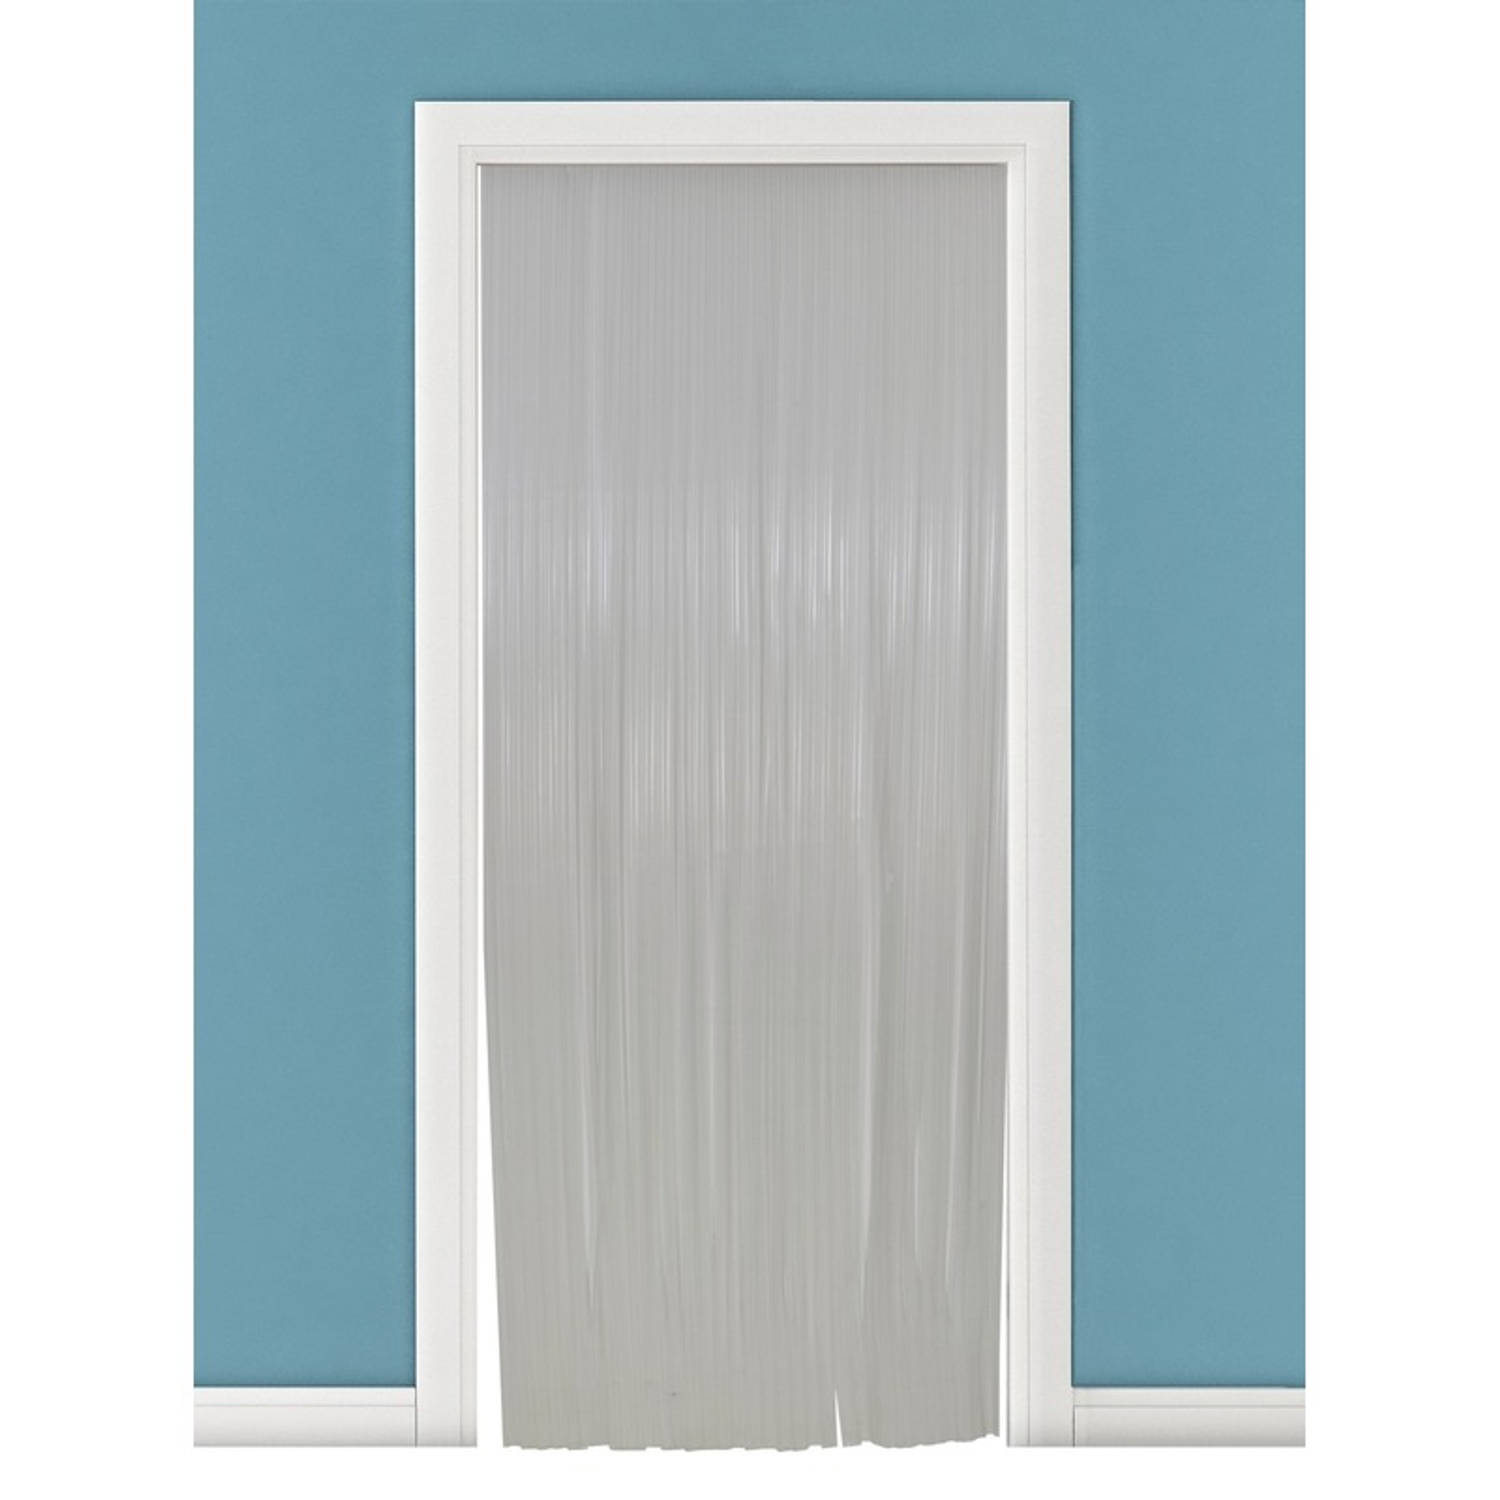 Vliegengordijn-deurgordijn PVC tris wit 90 x 220 cm Insectenwerende vliegengordijnen